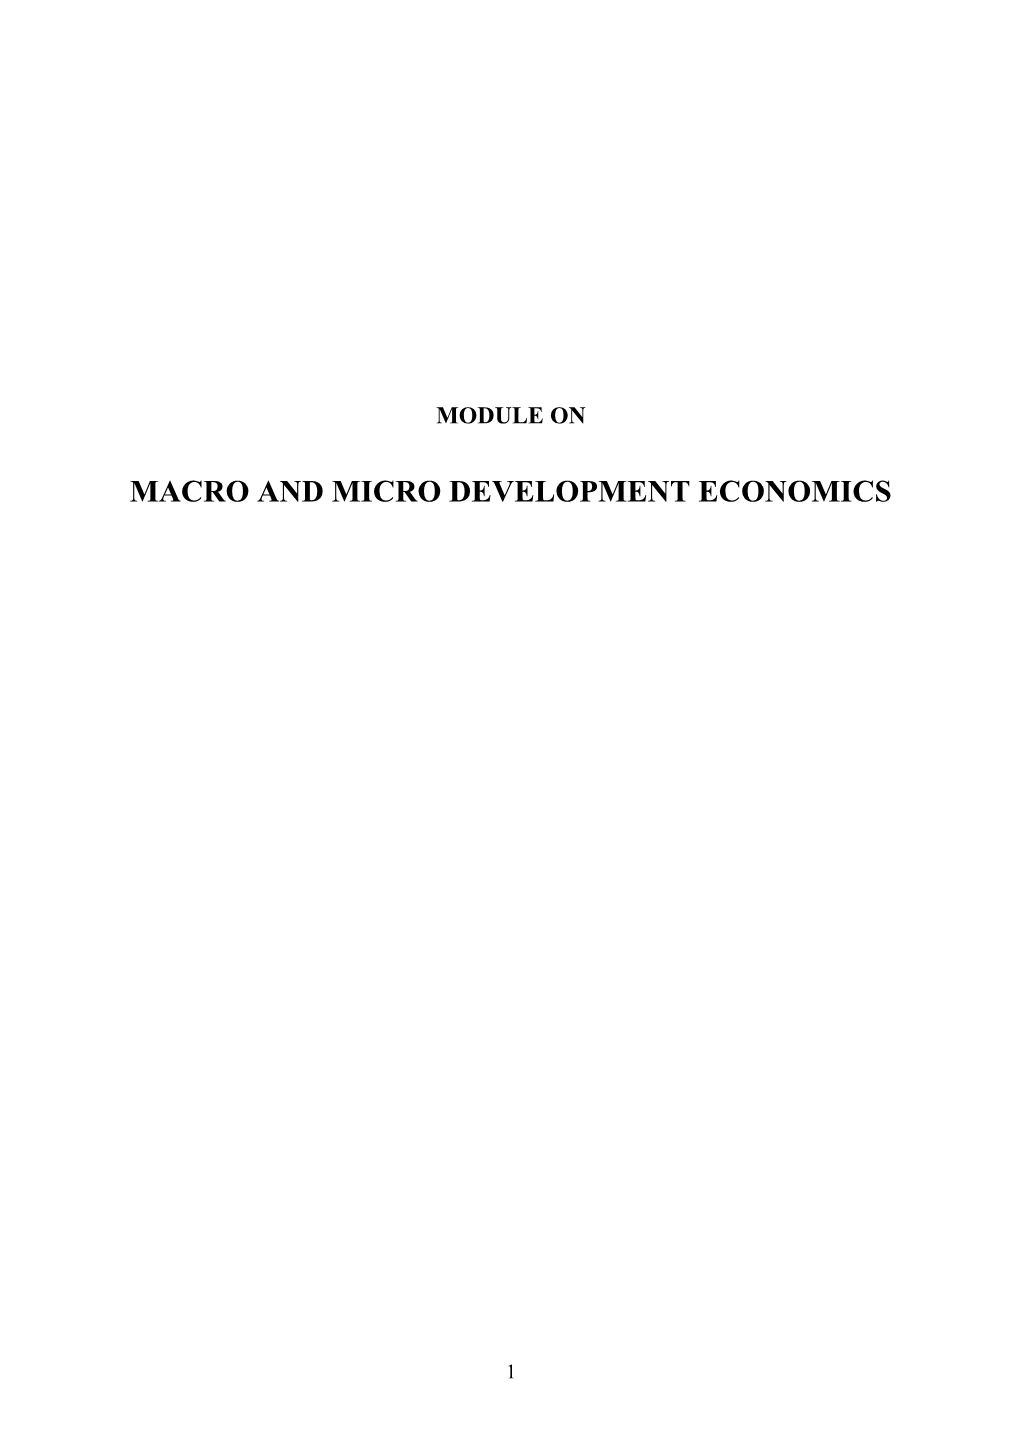 Macro and Micro Development Economics